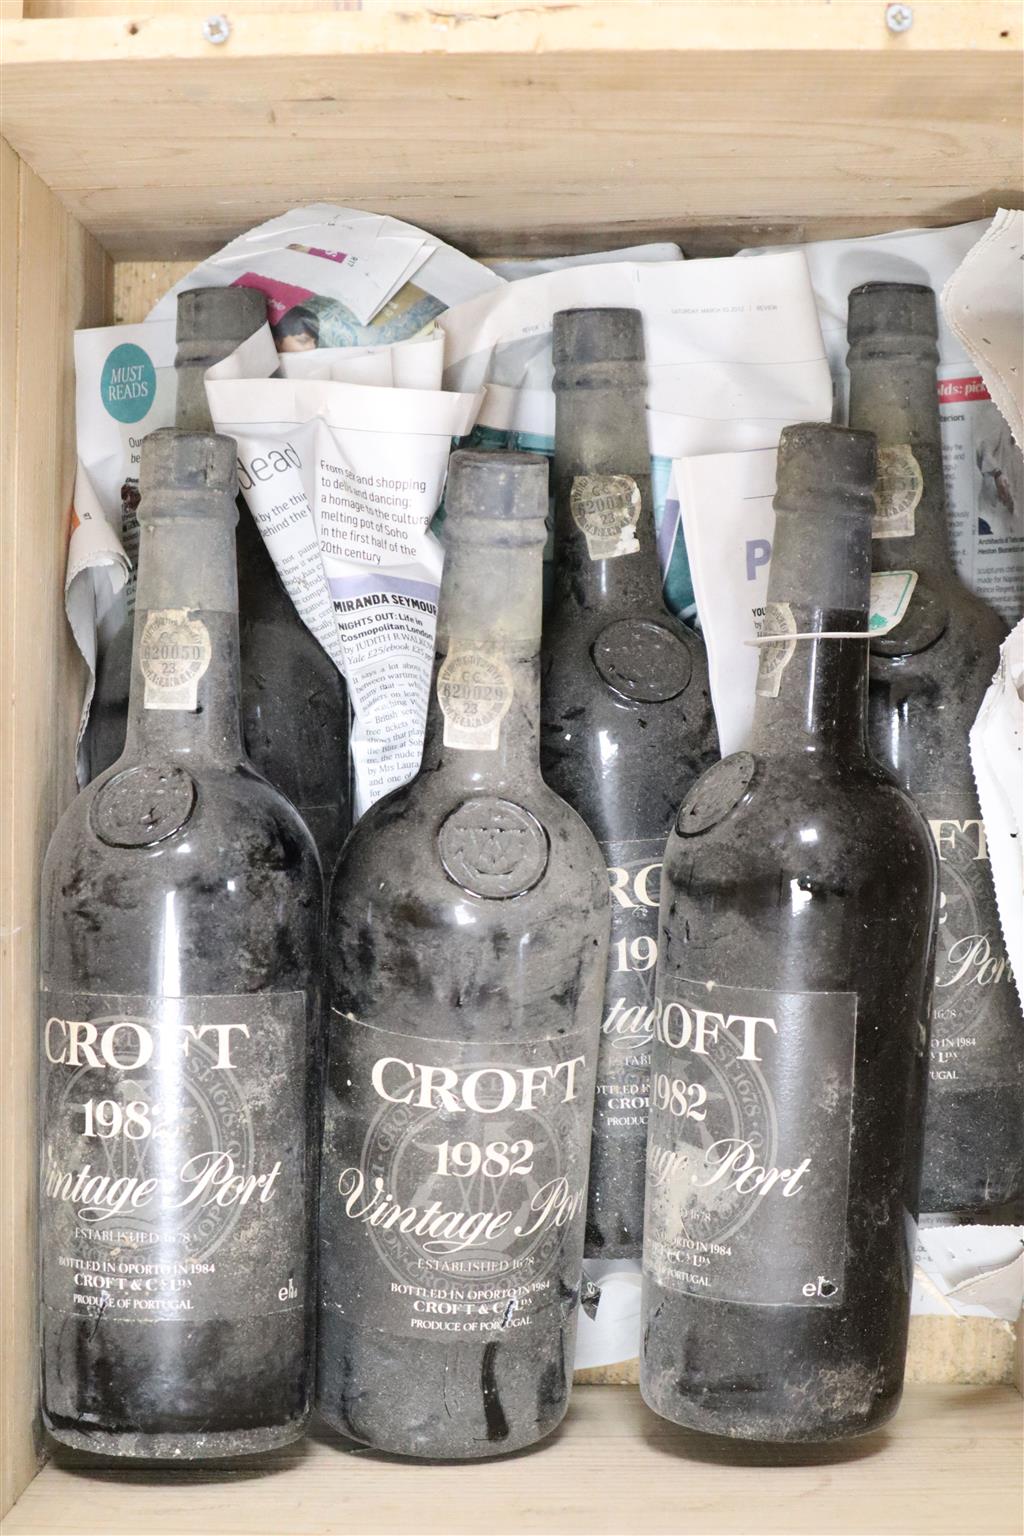 Six bottles of Croft 1982 vintage Port